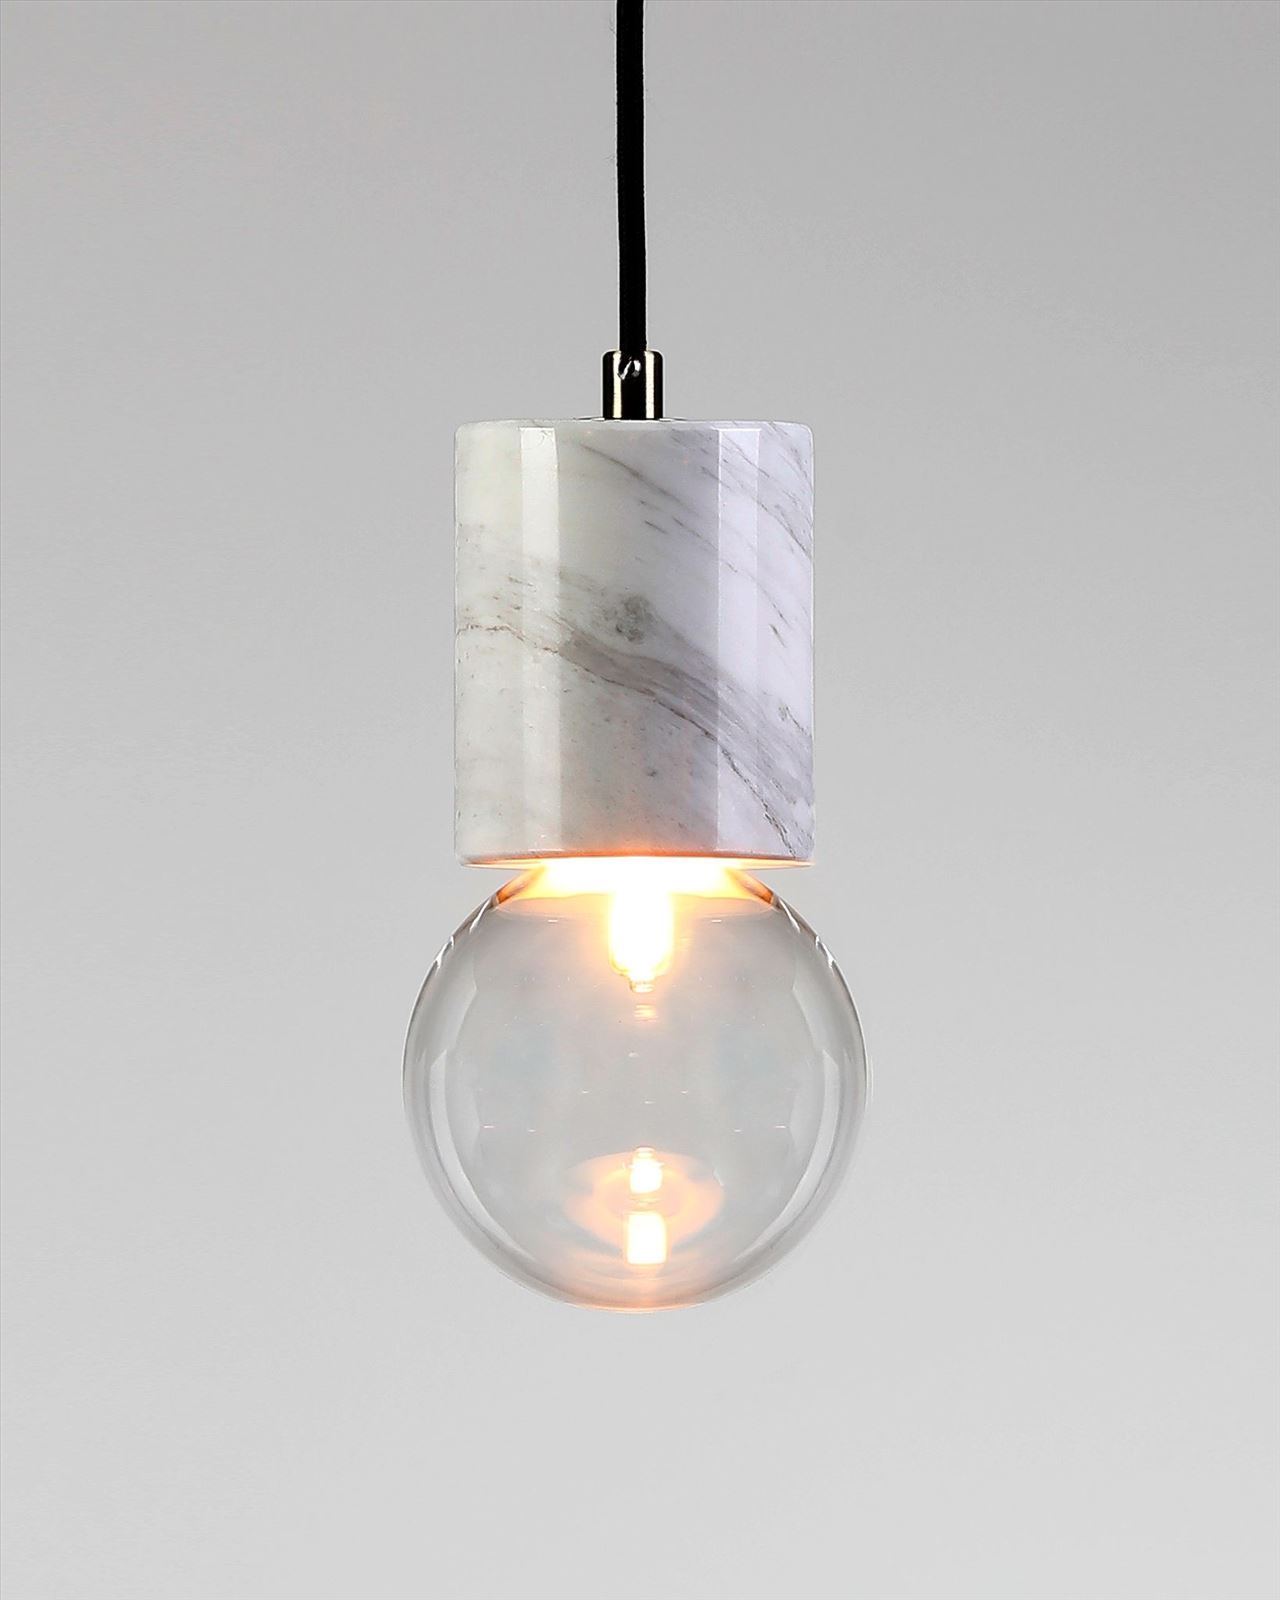 גופי תאורה בקטגוריית מנורות תליה שם המוצר Badolina • Dori Kimhi Lighting 4284